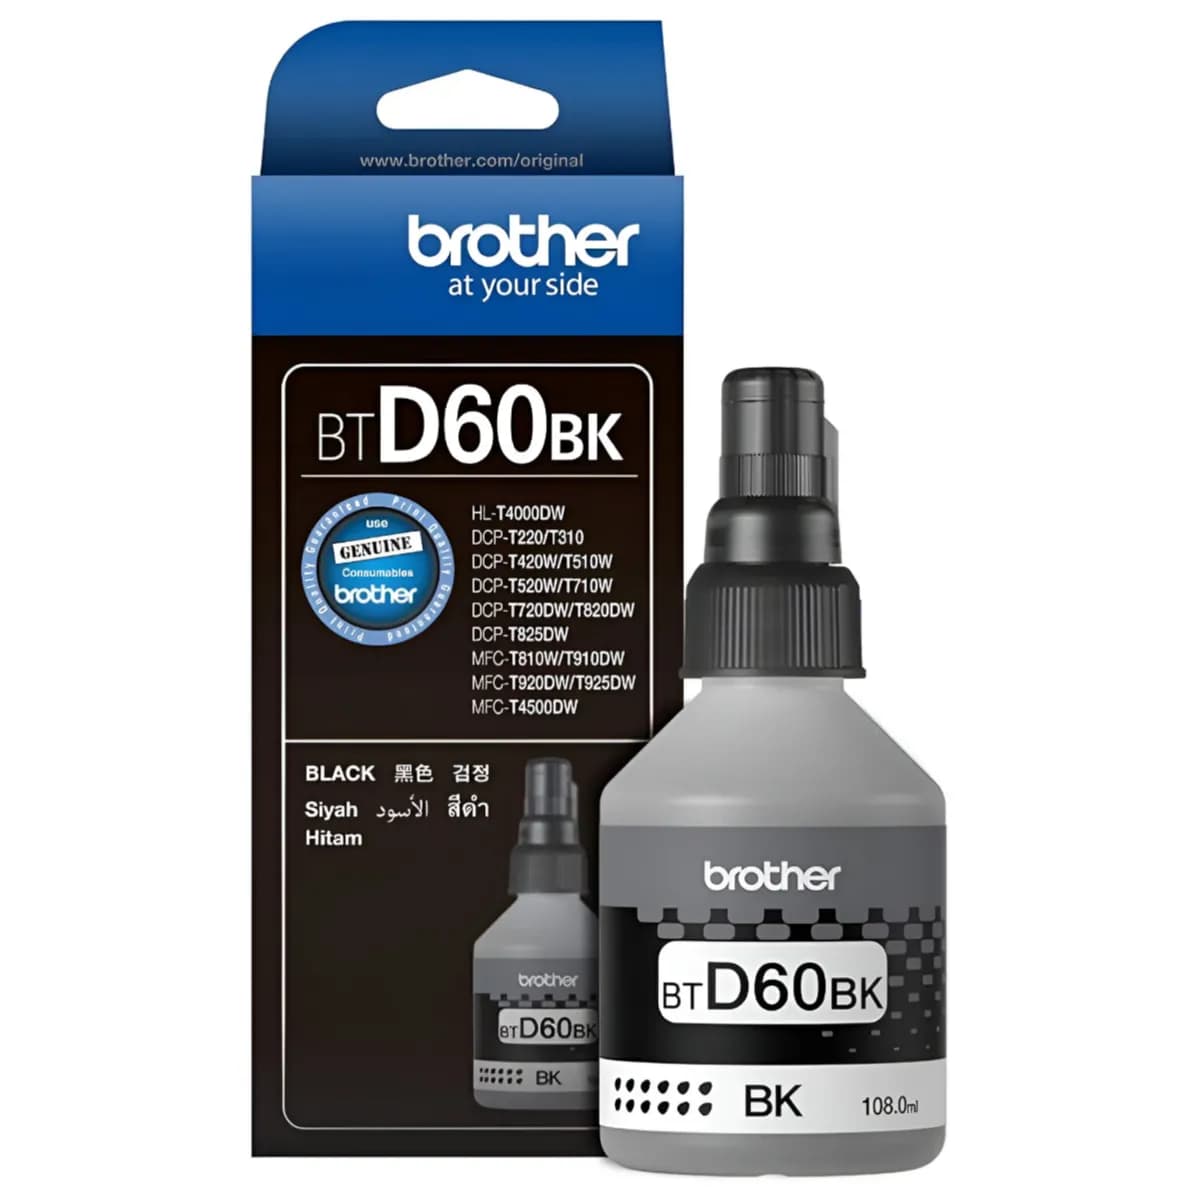 Brother Bt-D60bk Ink Bottle (Black) -(CGOM42)